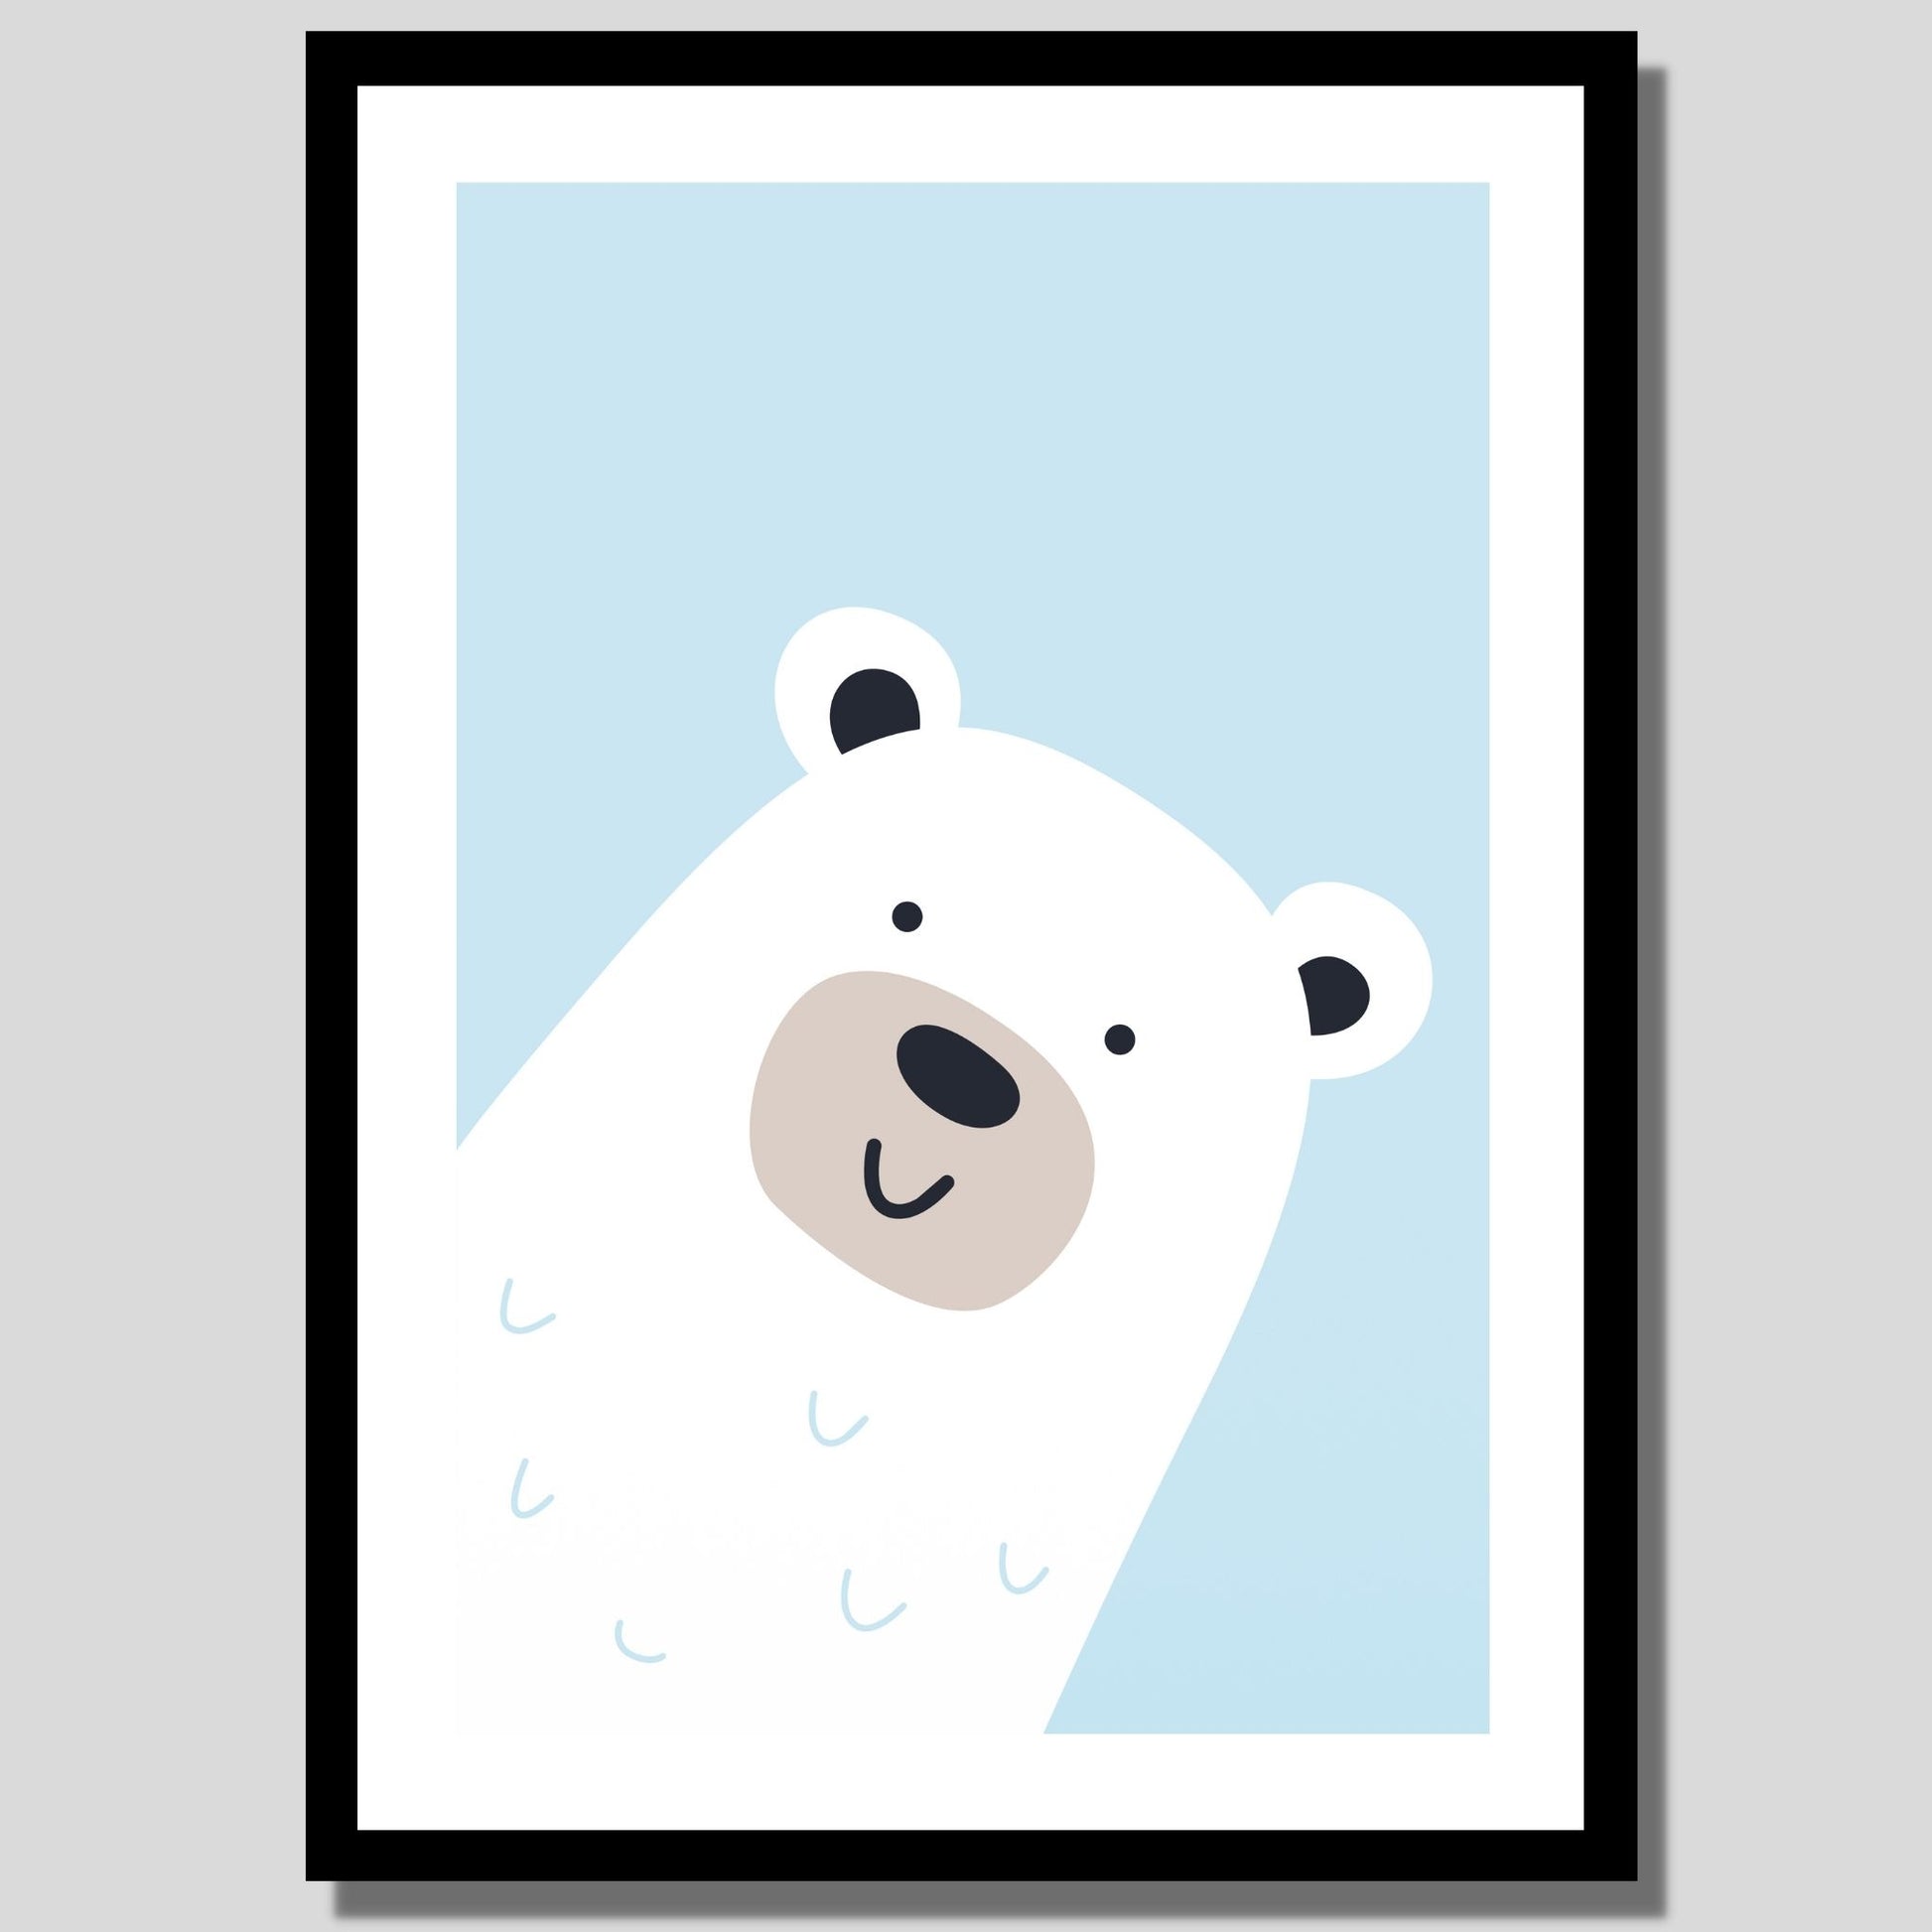 Cartoon Animal. Grafisk plakat for barnerommet. Hvit bjørn på lys blå bakgrunn. Illustrasjon av plakat med hvit kant rundt i sort ramme.